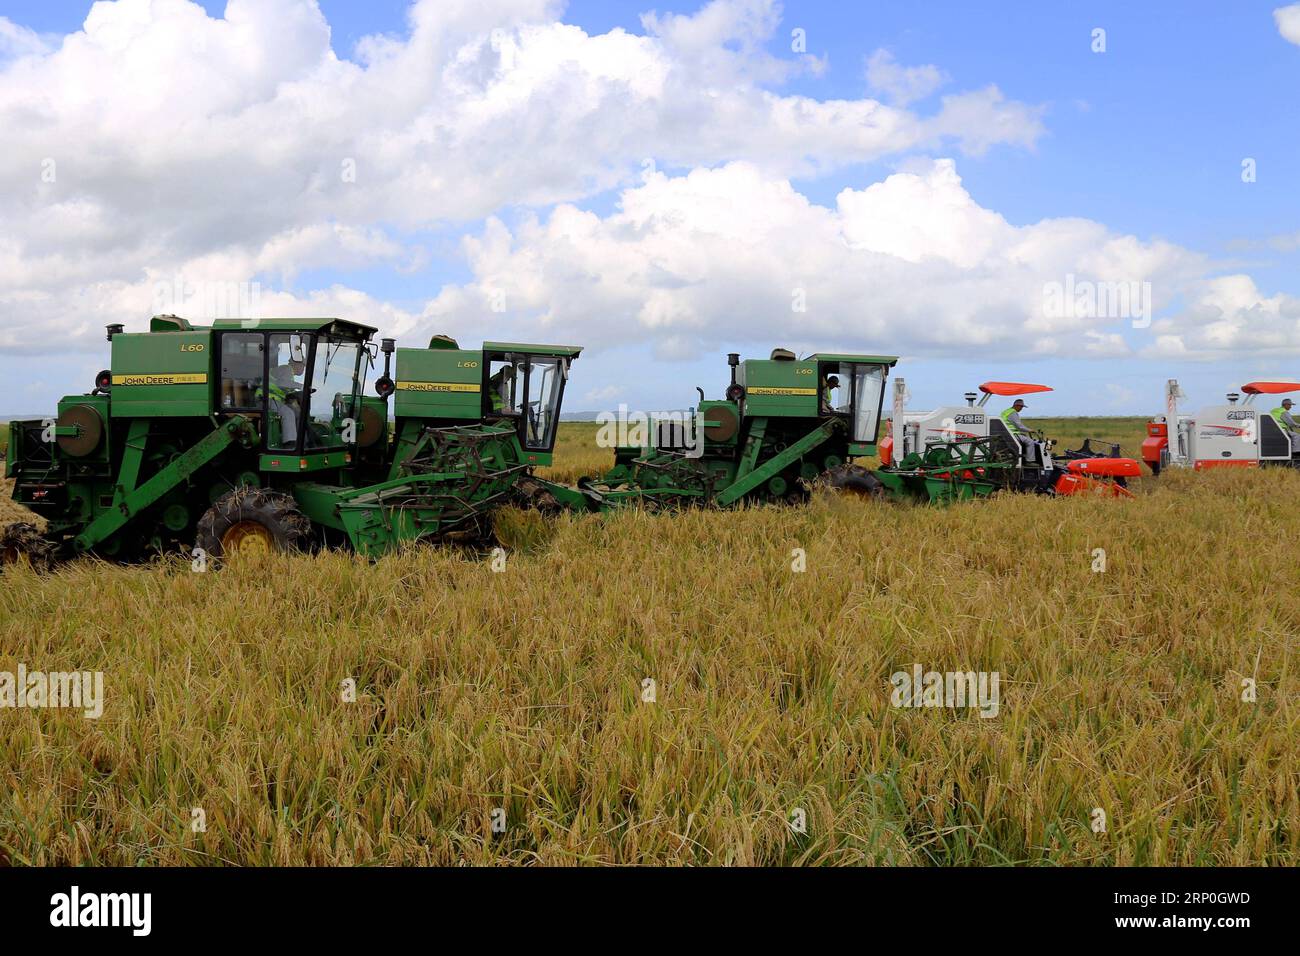 (180514) -- GAZA (MOSAMBIK), 14. Mai 2018 () -- Erntemacher arbeiten auf dem Reisfeld der Reisfarm Wanbao in der Provinz Gaza, Mosambik, 4. April 2018. Die Reisfarm Wanbao Mosambik, die vom China-Afrika-Entwicklungsfonds investiert wird, ist die größte ihrer Art, die China in Afrika betreibt. Das Projekt, ein umfassendes Unternehmen, das Plantagen, Lagerung, Verarbeitung und Verkauf umfasst, zielt auf die Entwicklung von 20.000 Hektar Ackerland ab und wird Landwirte in den umliegenden Gebieten dazu bringen, über weitere 80.000 Hektar Getreide anzubauen. () (sxk) MOSAMBIK-GAZA-CHINA-LANDWIRTSCHAFTSPROJEKT Xinhua PUBLICATIONxNOTxINxCHN Stockfoto